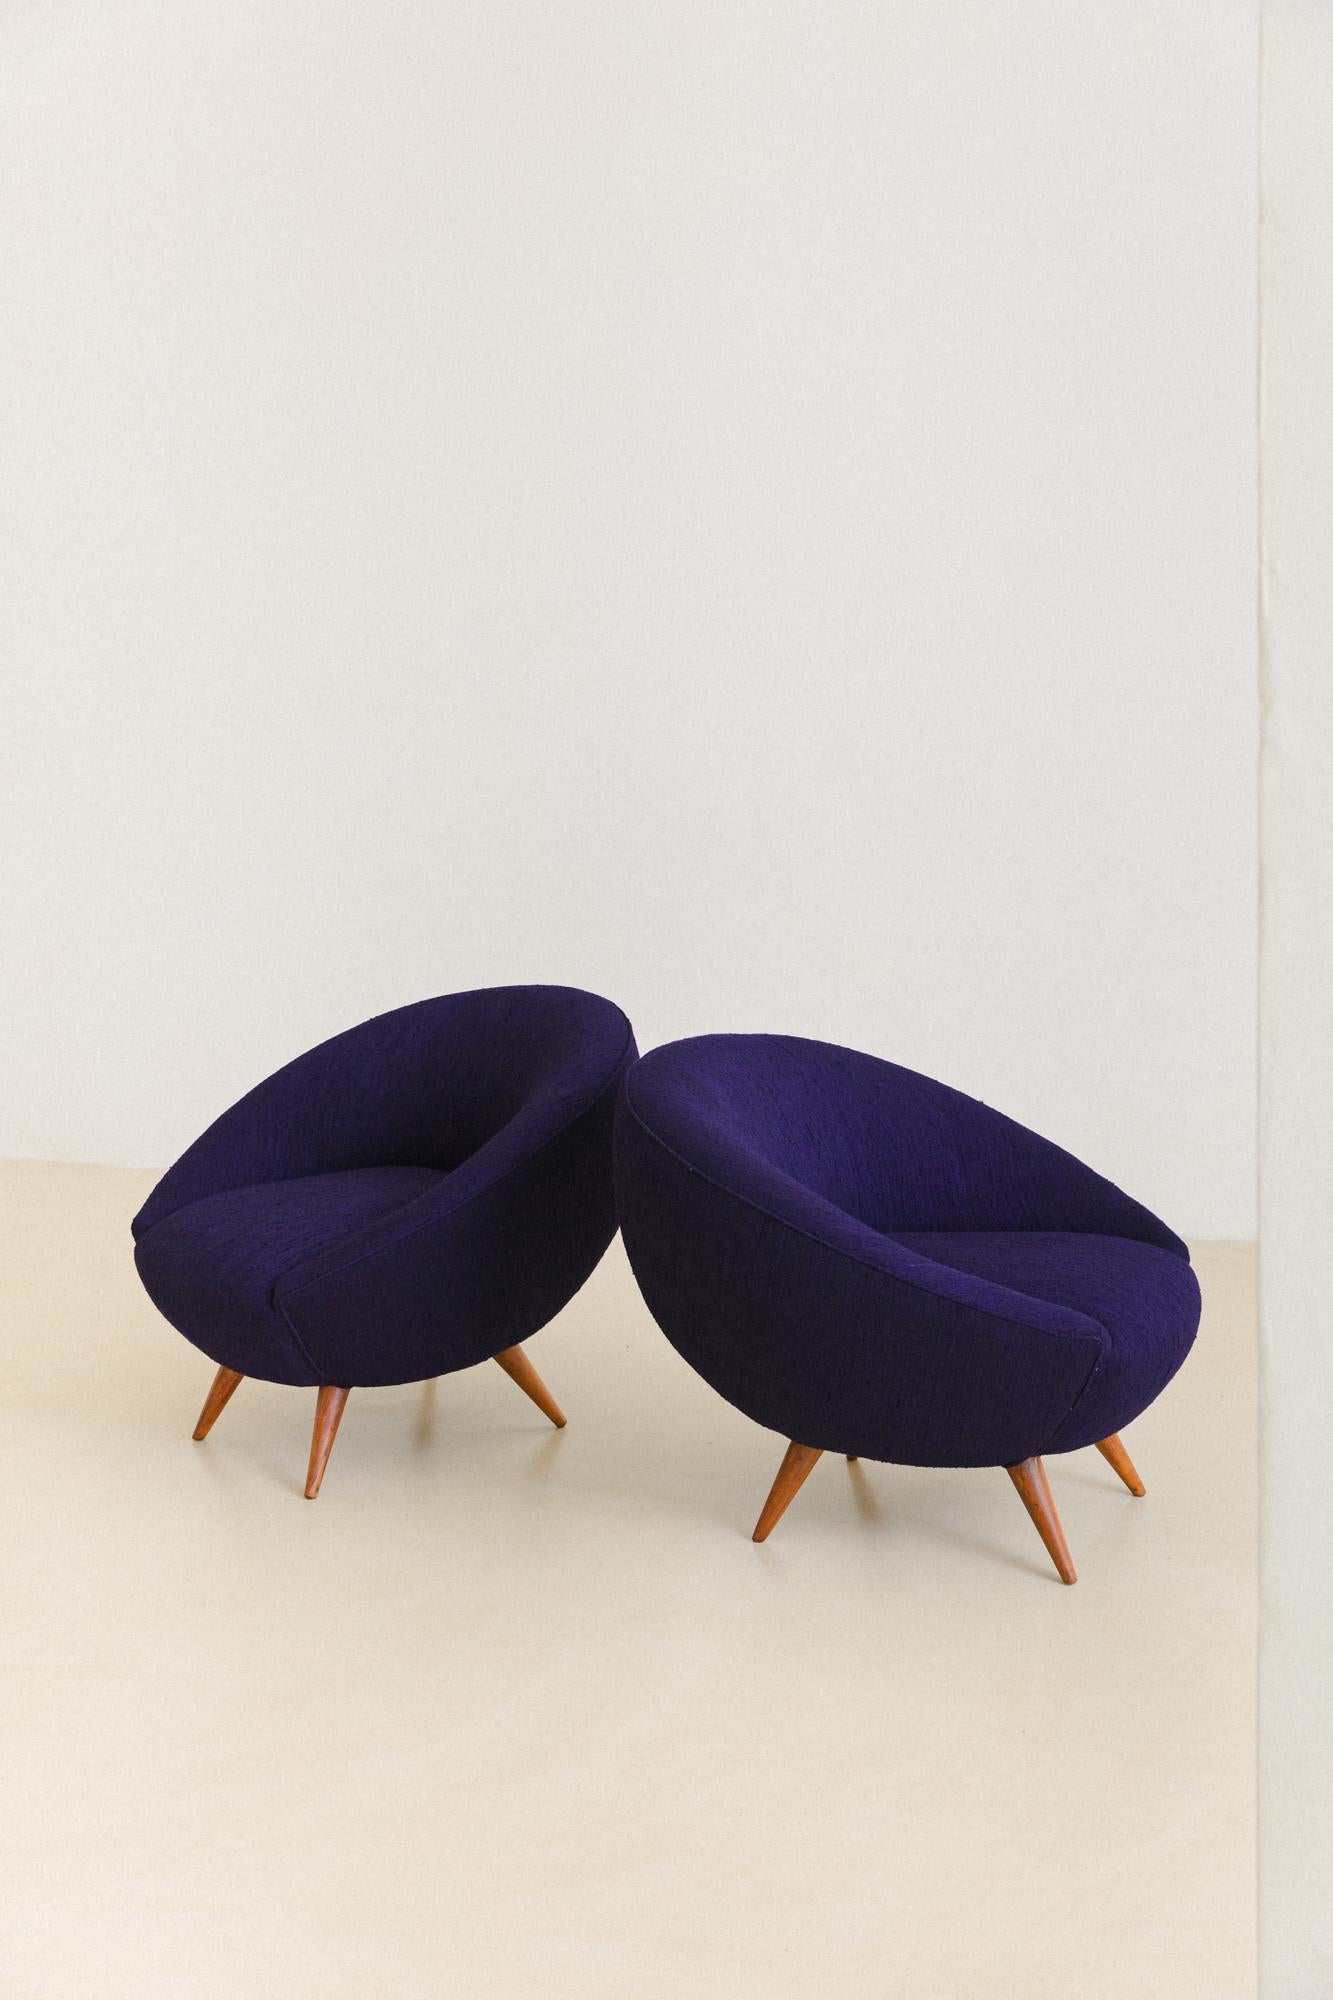 Dieses schöne Paar runder Sessel wurde in den 1960er Jahren hergestellt, und die Urheberschaft konnte von unserem Team noch nicht ermittelt werden. Die Stücke wurden mit einem wunderschönen indigoblauen Stoff aus 100% Bio-Seide aus unserer